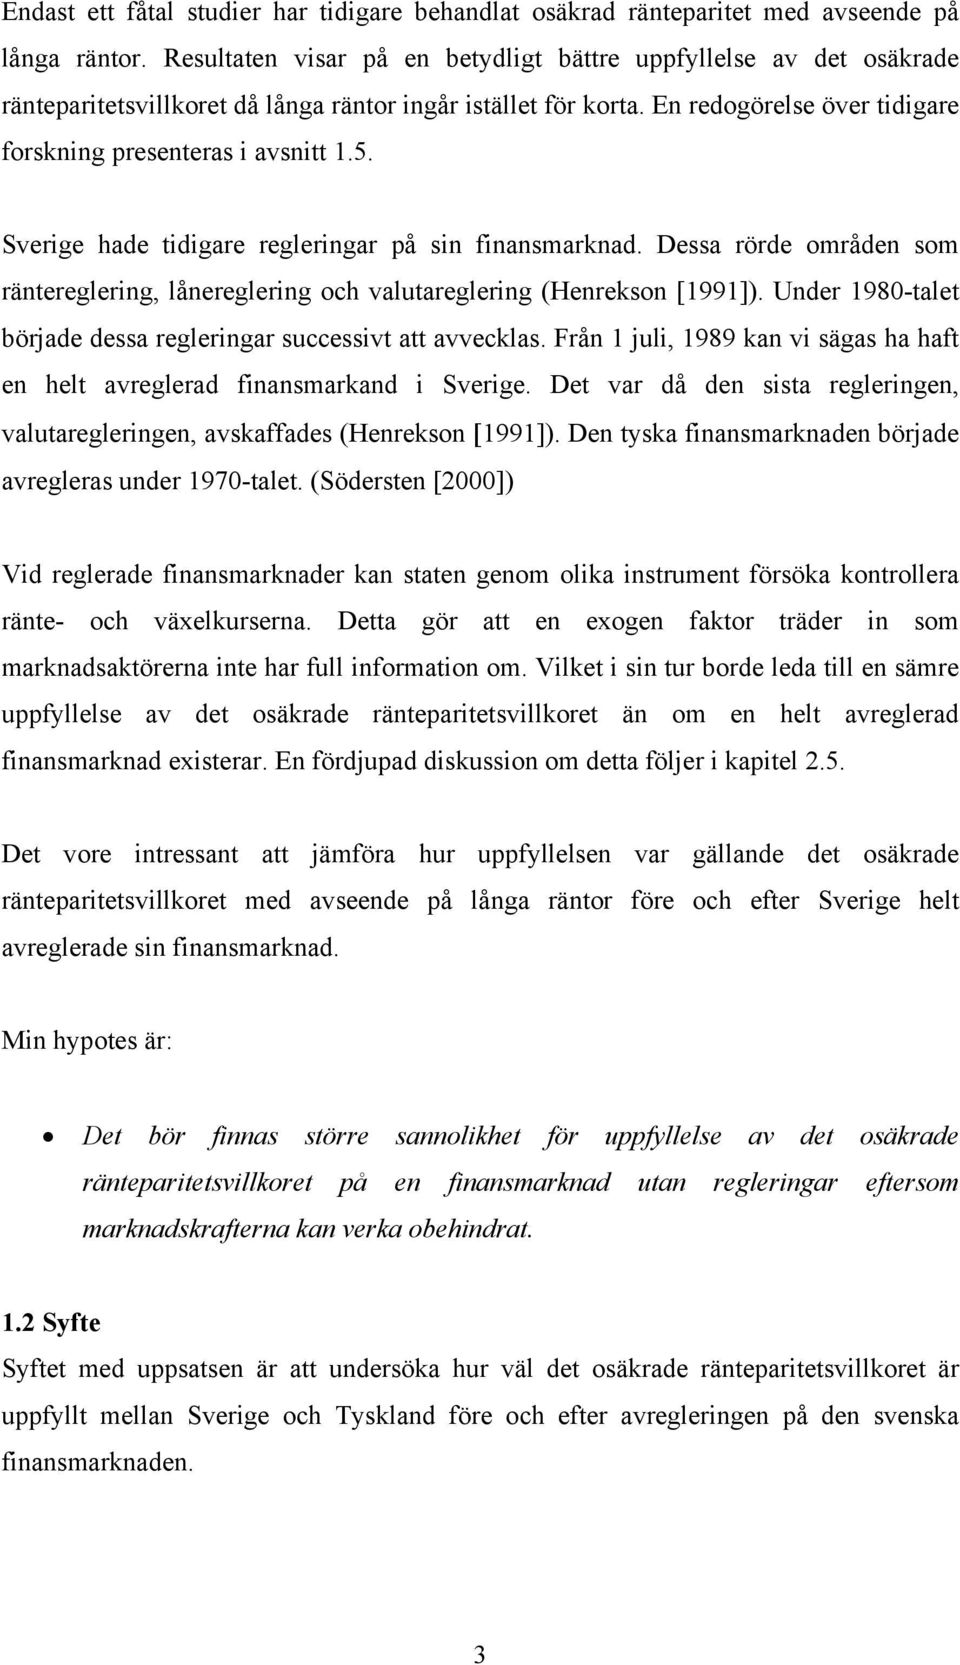 Sverige hade tidigare regleringar på sin finansmarknad. Dessa rörde områden som räntereglering, lånereglering och valutareglering (Henrekson [1991]).